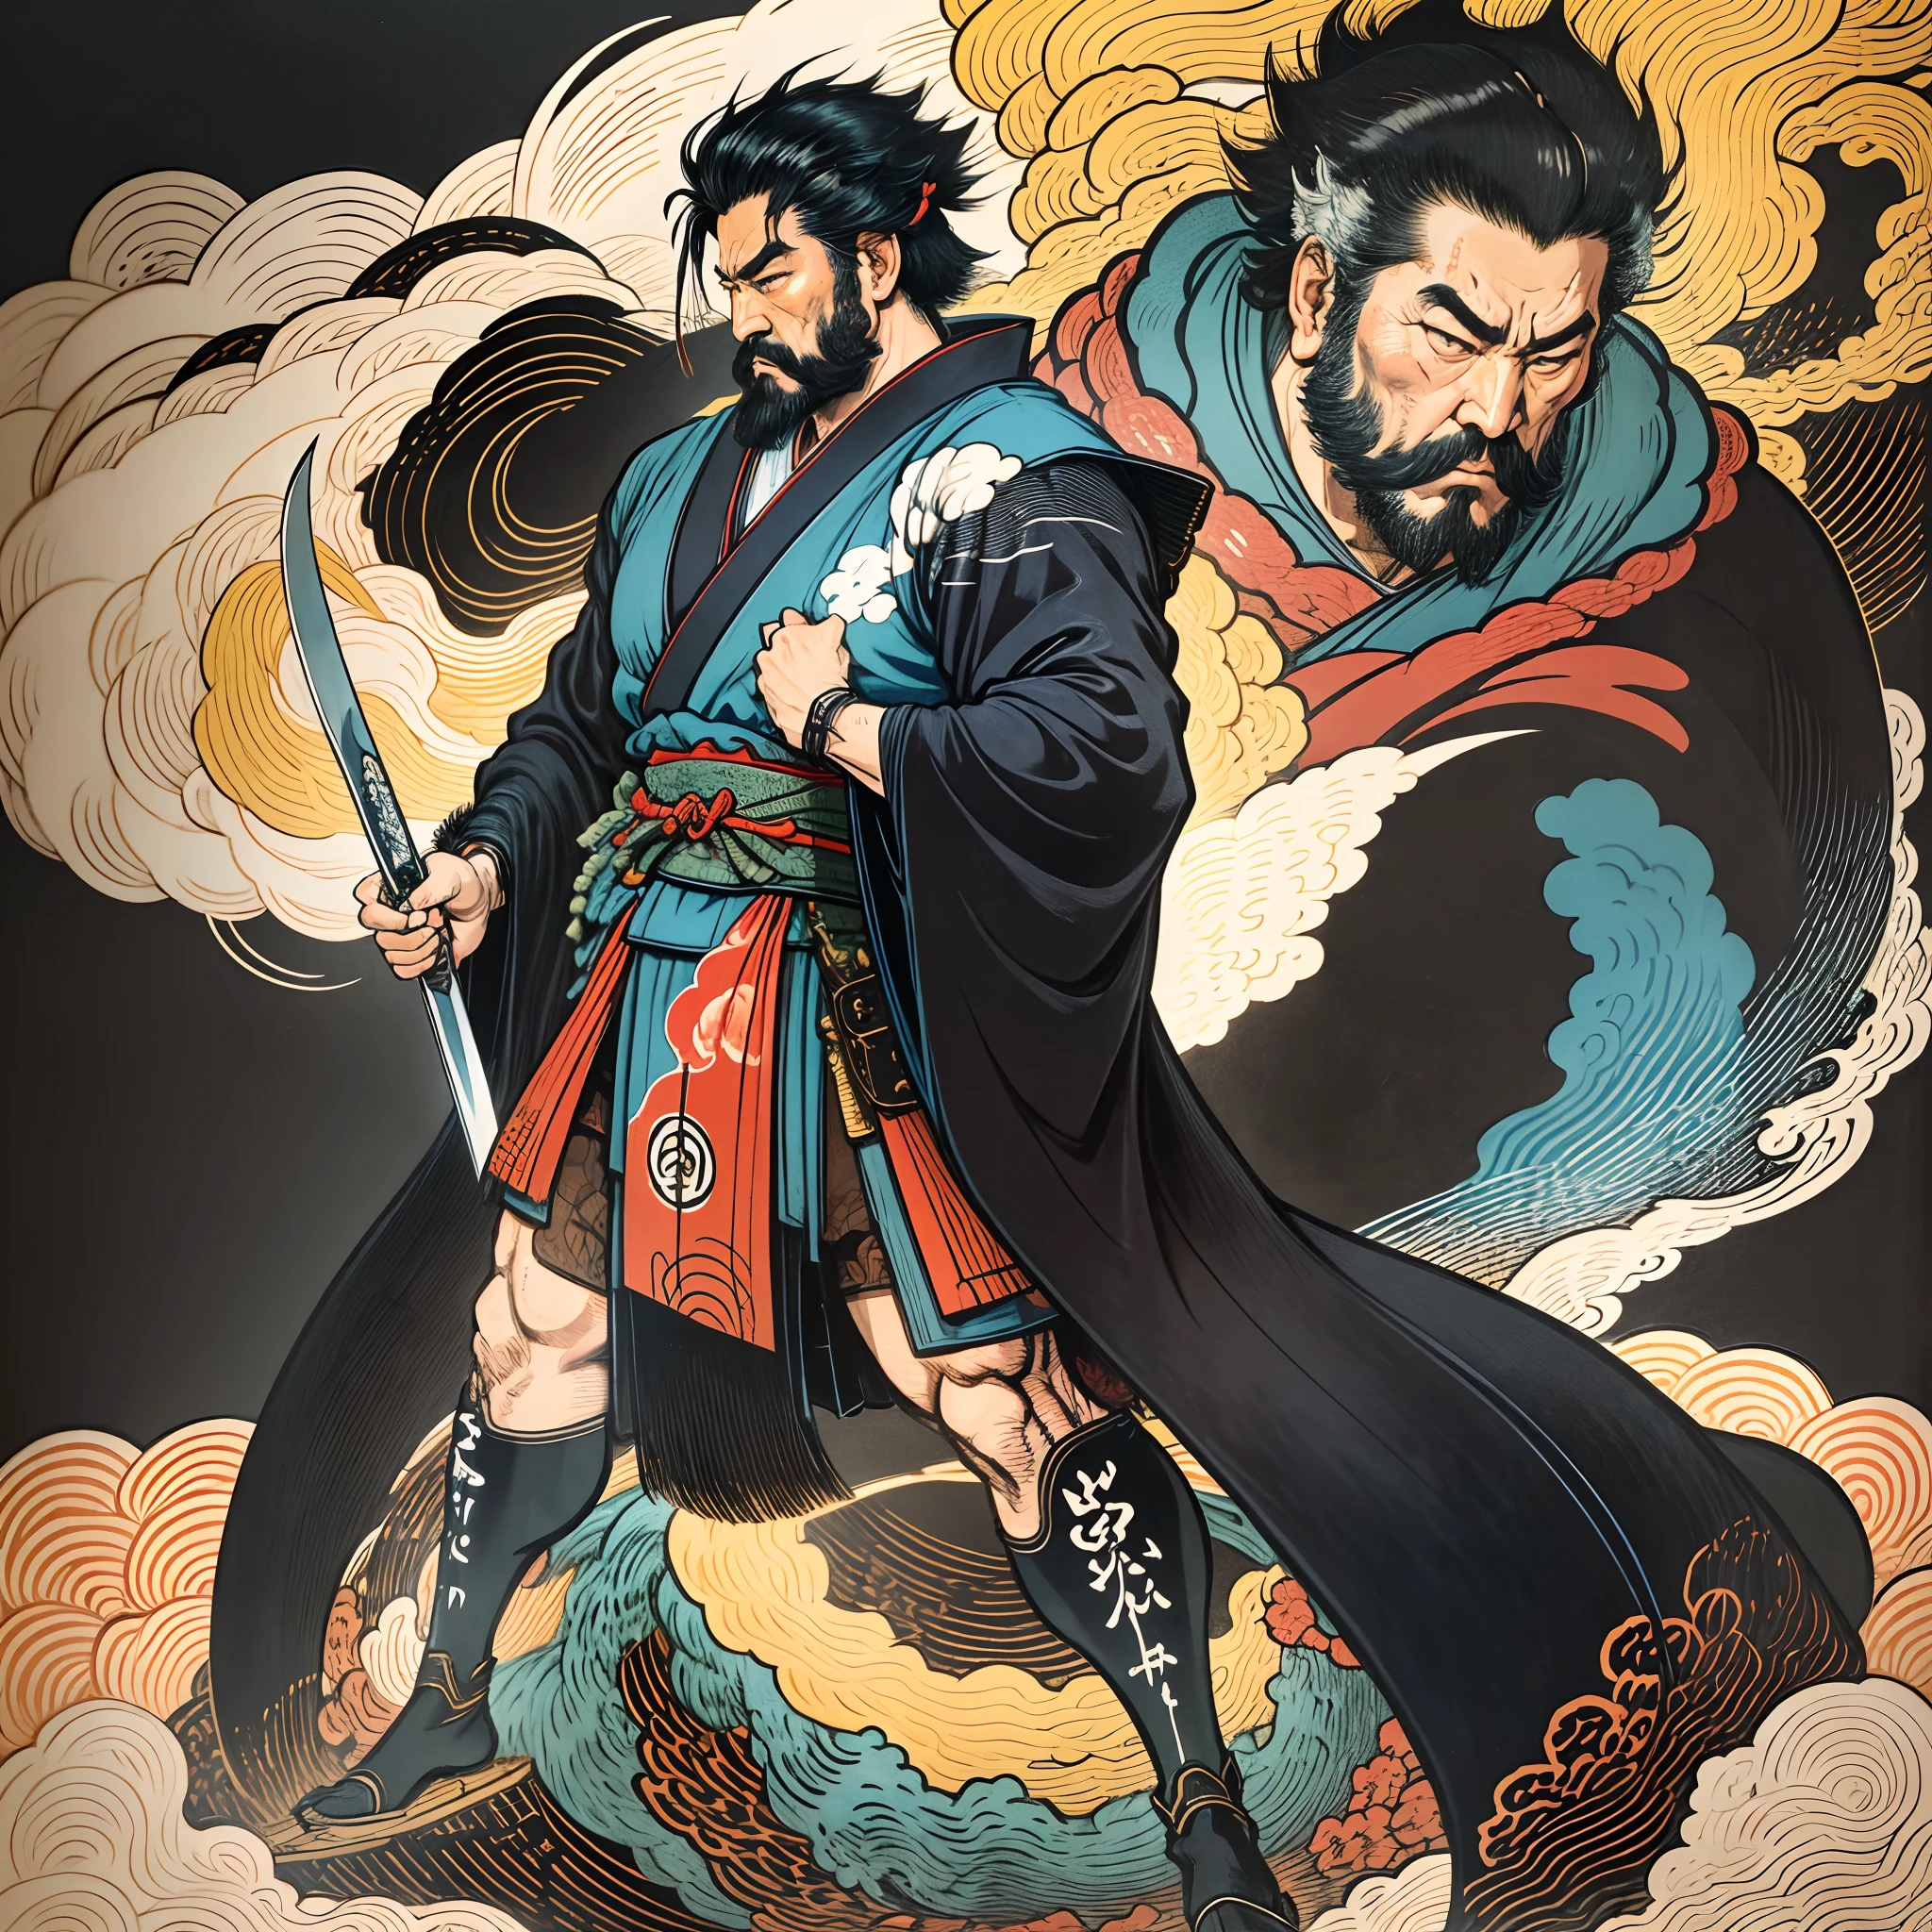 É uma pintura de corpo inteiro com cores naturais com desenhos de linhas no estilo Katsushika Hokusai.. O espadachim Miyamoto Musashi tem um corpo grande como um homem forte. Samurais do Japão. Ele tem uma expressão de determinação digna, mas viril, Cabelo preto curto, e um curto, barba aparada. A parte superior de seu corpo está coberta por um quimono preto e seu hakama vai até os joelhos.. Na mão direita ele segura uma espada japonesa. na mais alta qualidade, no relâmpago de alta resolução do estilo ukiyo-e e nas chamas rodopiantes da obra-prima. Miyamoto Musashi fica com o rosto e o corpo voltados para frente, suas costas retas.